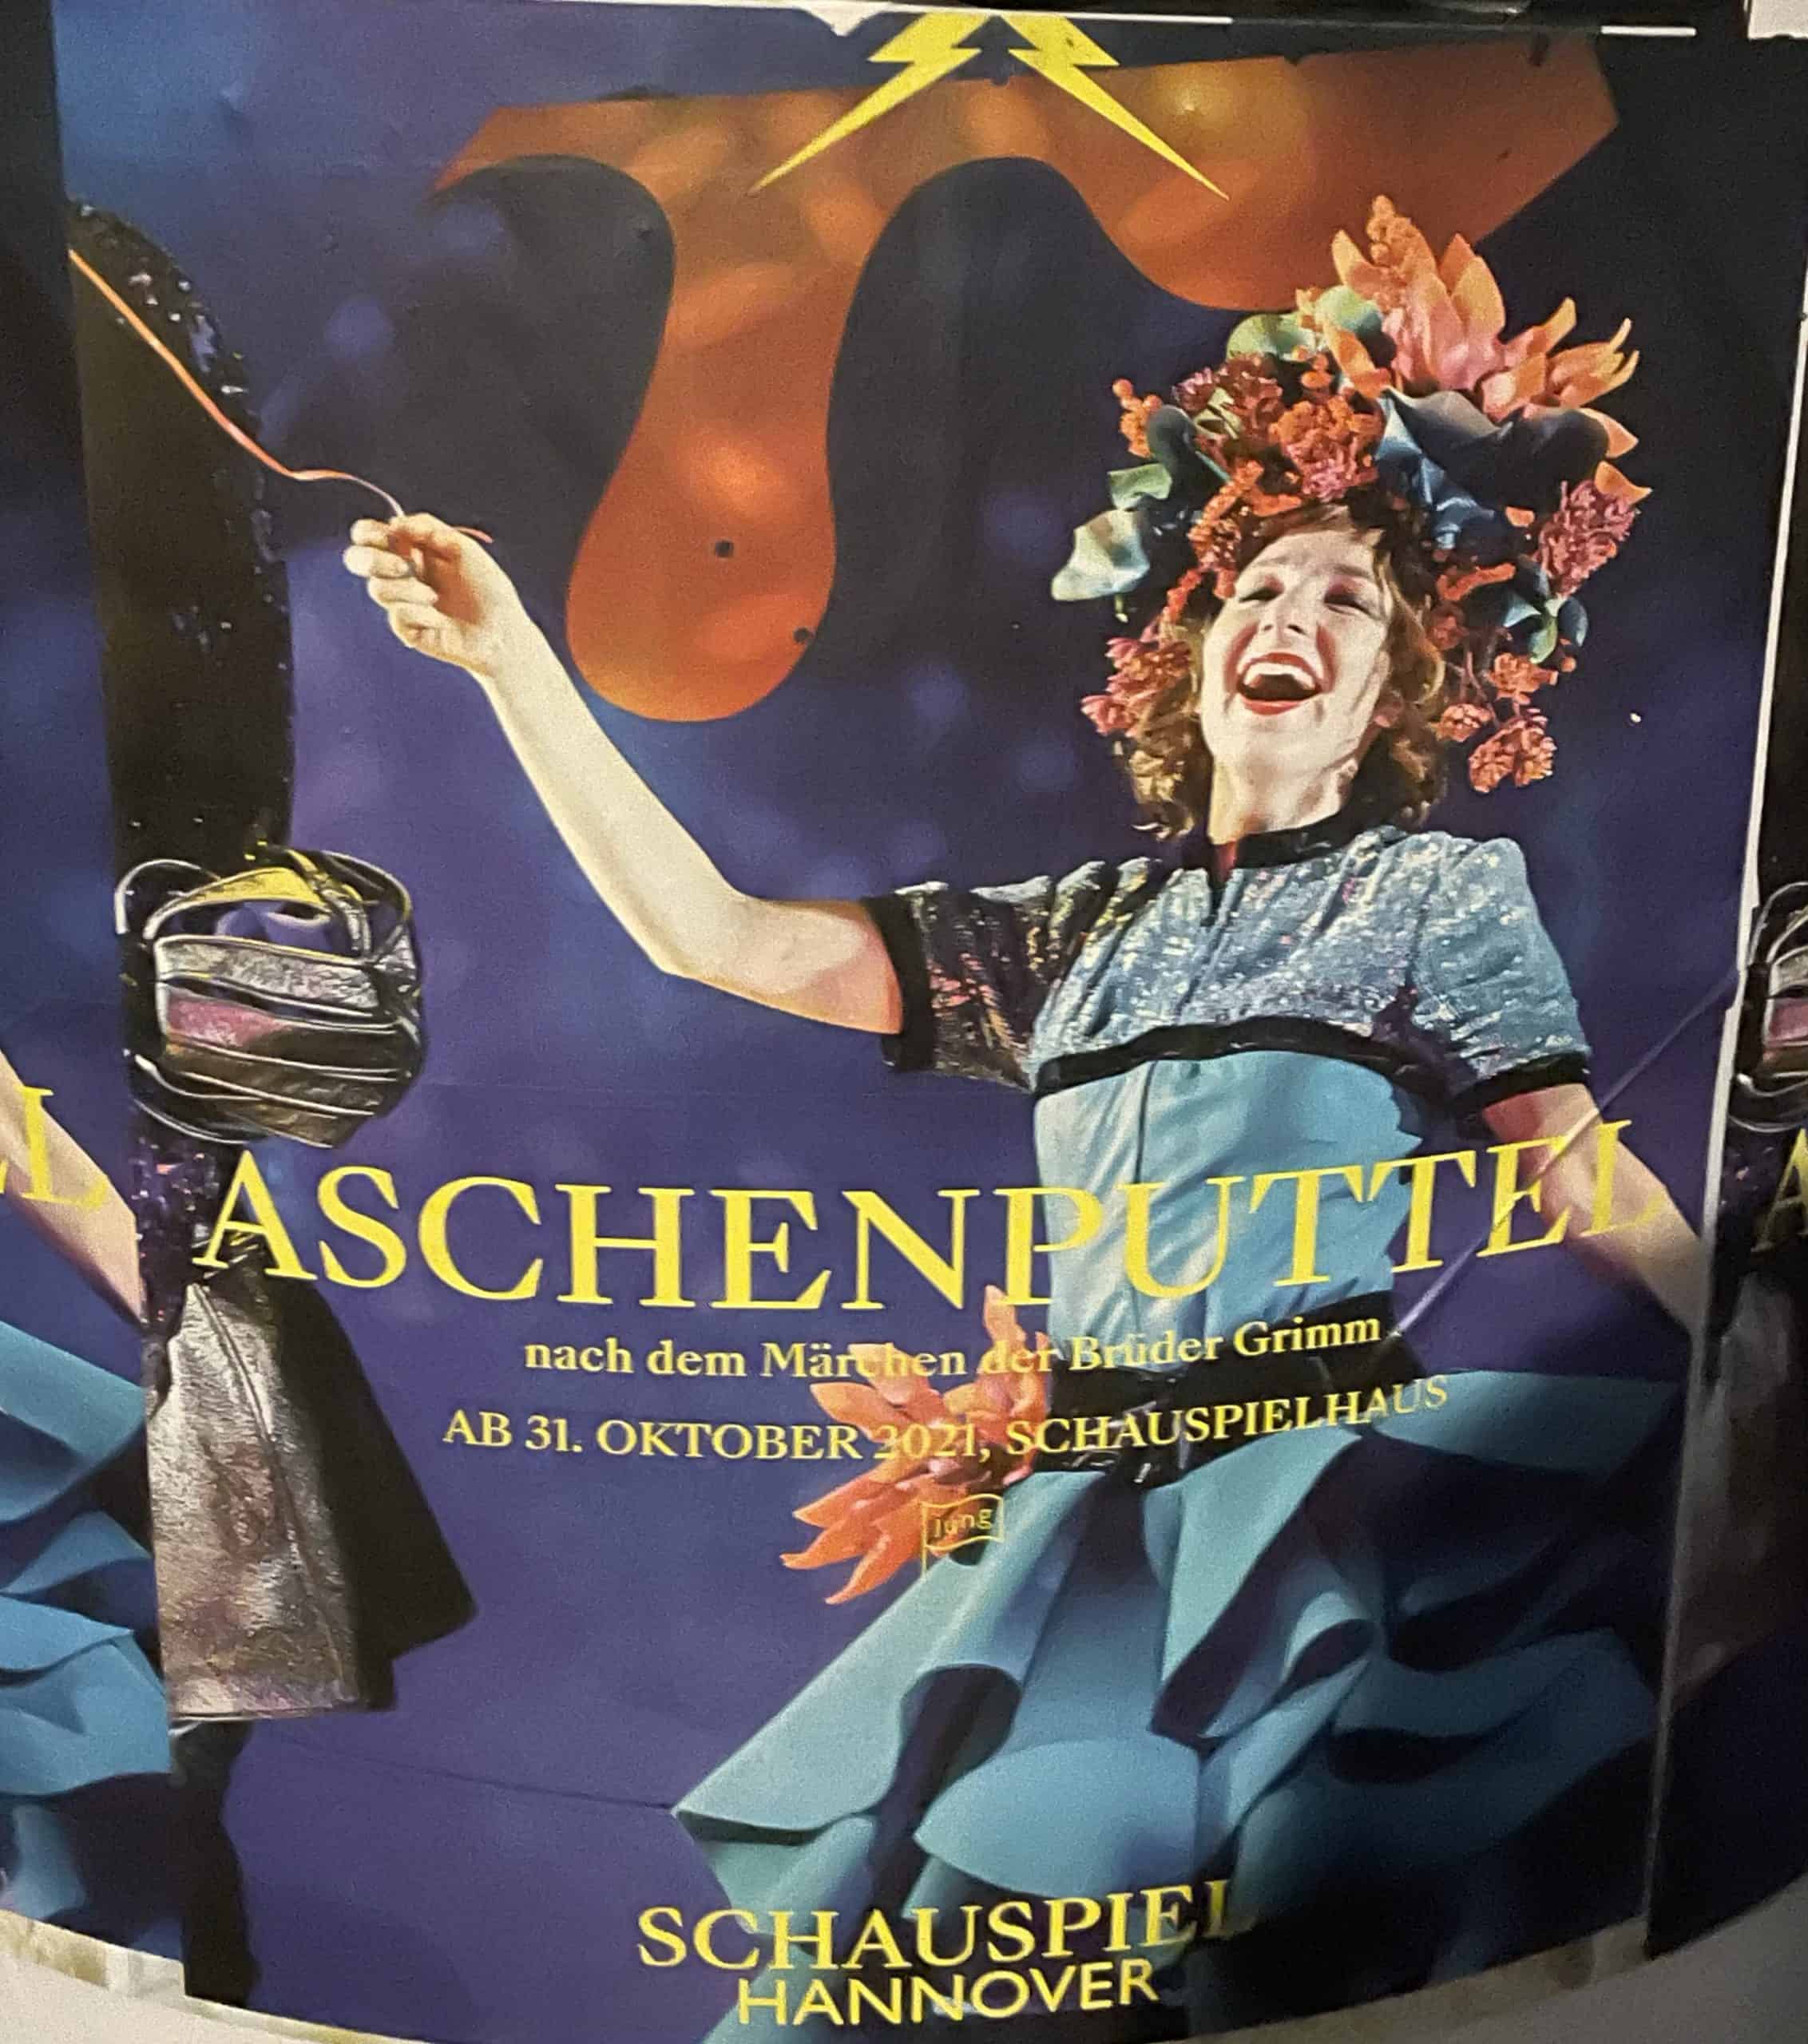 Aschenputtel - Schauspiel Hannover